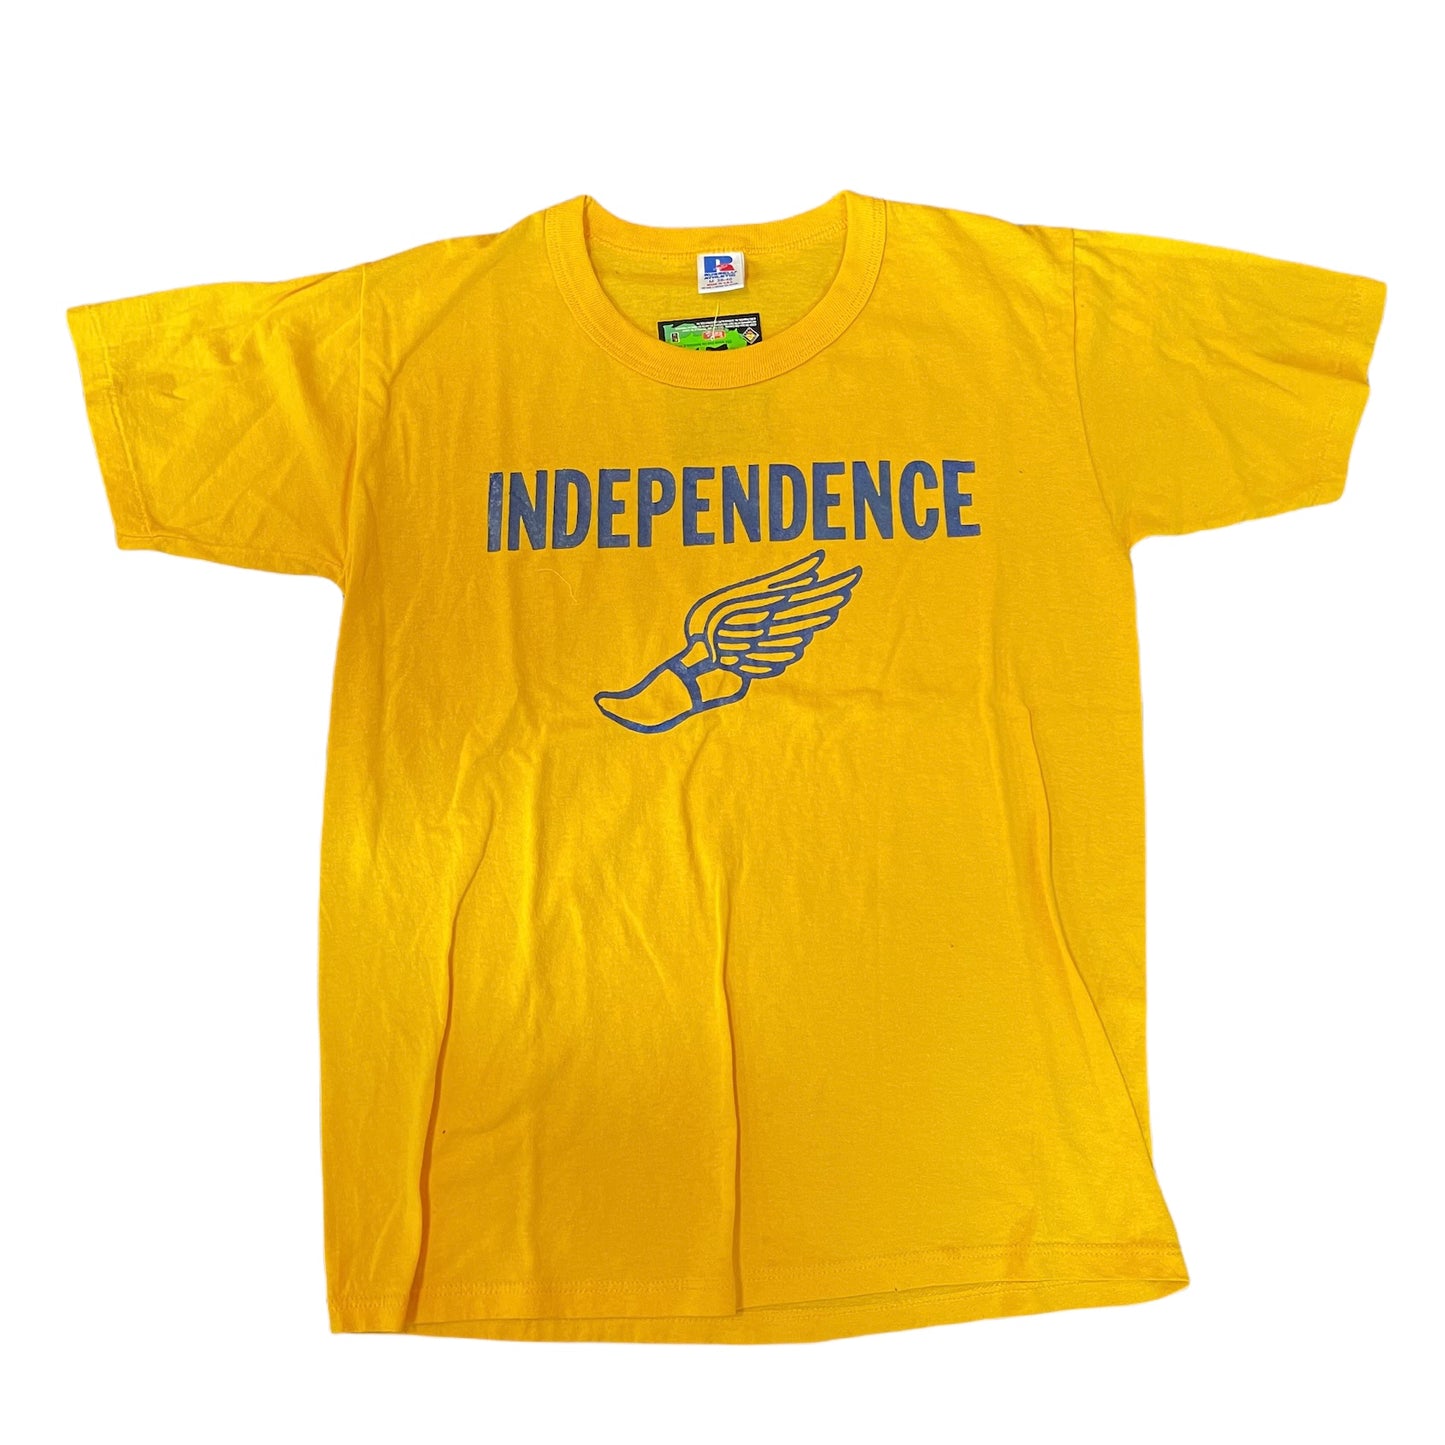 Vintage 1990s Independence Track Shirt